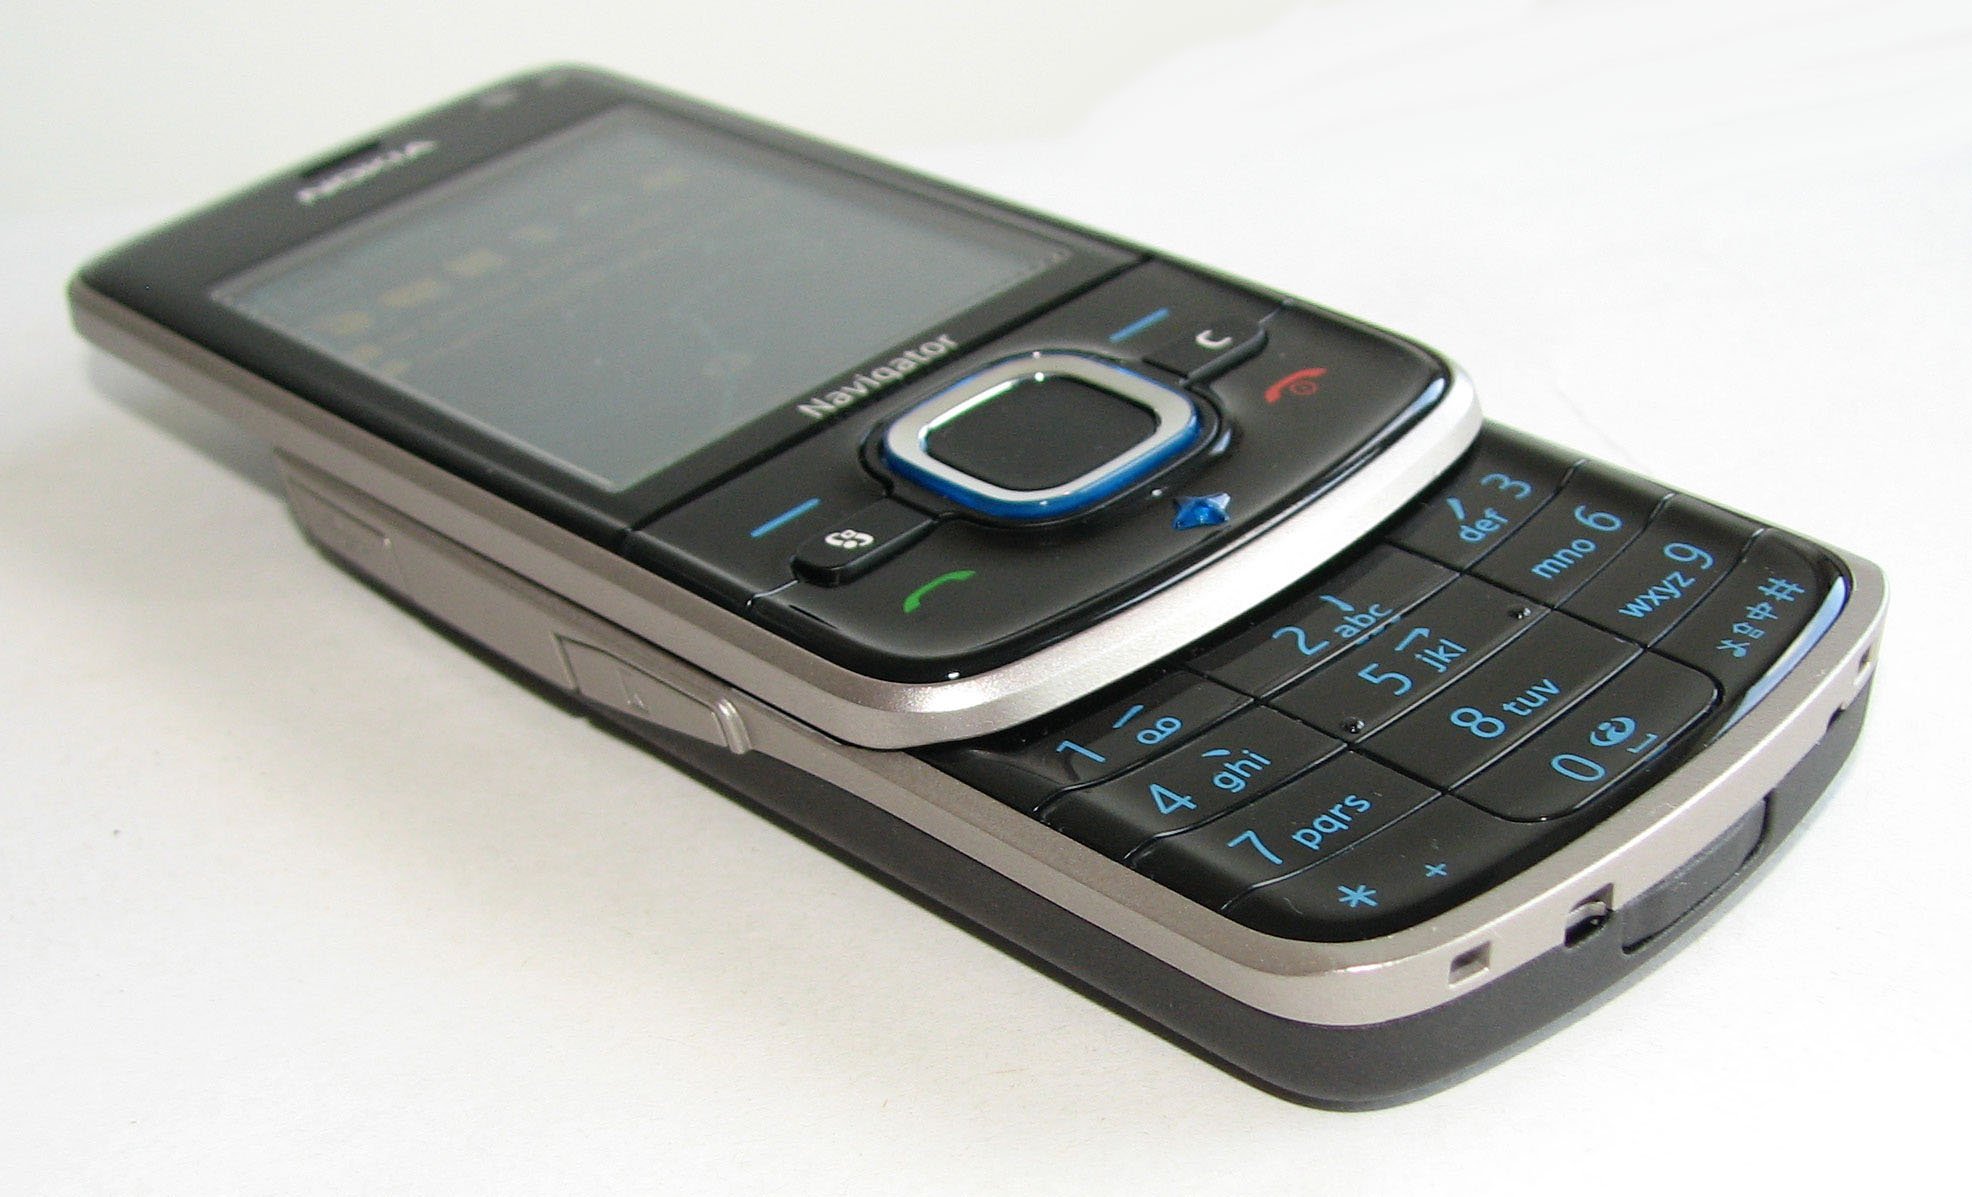 S60 Symbian Os